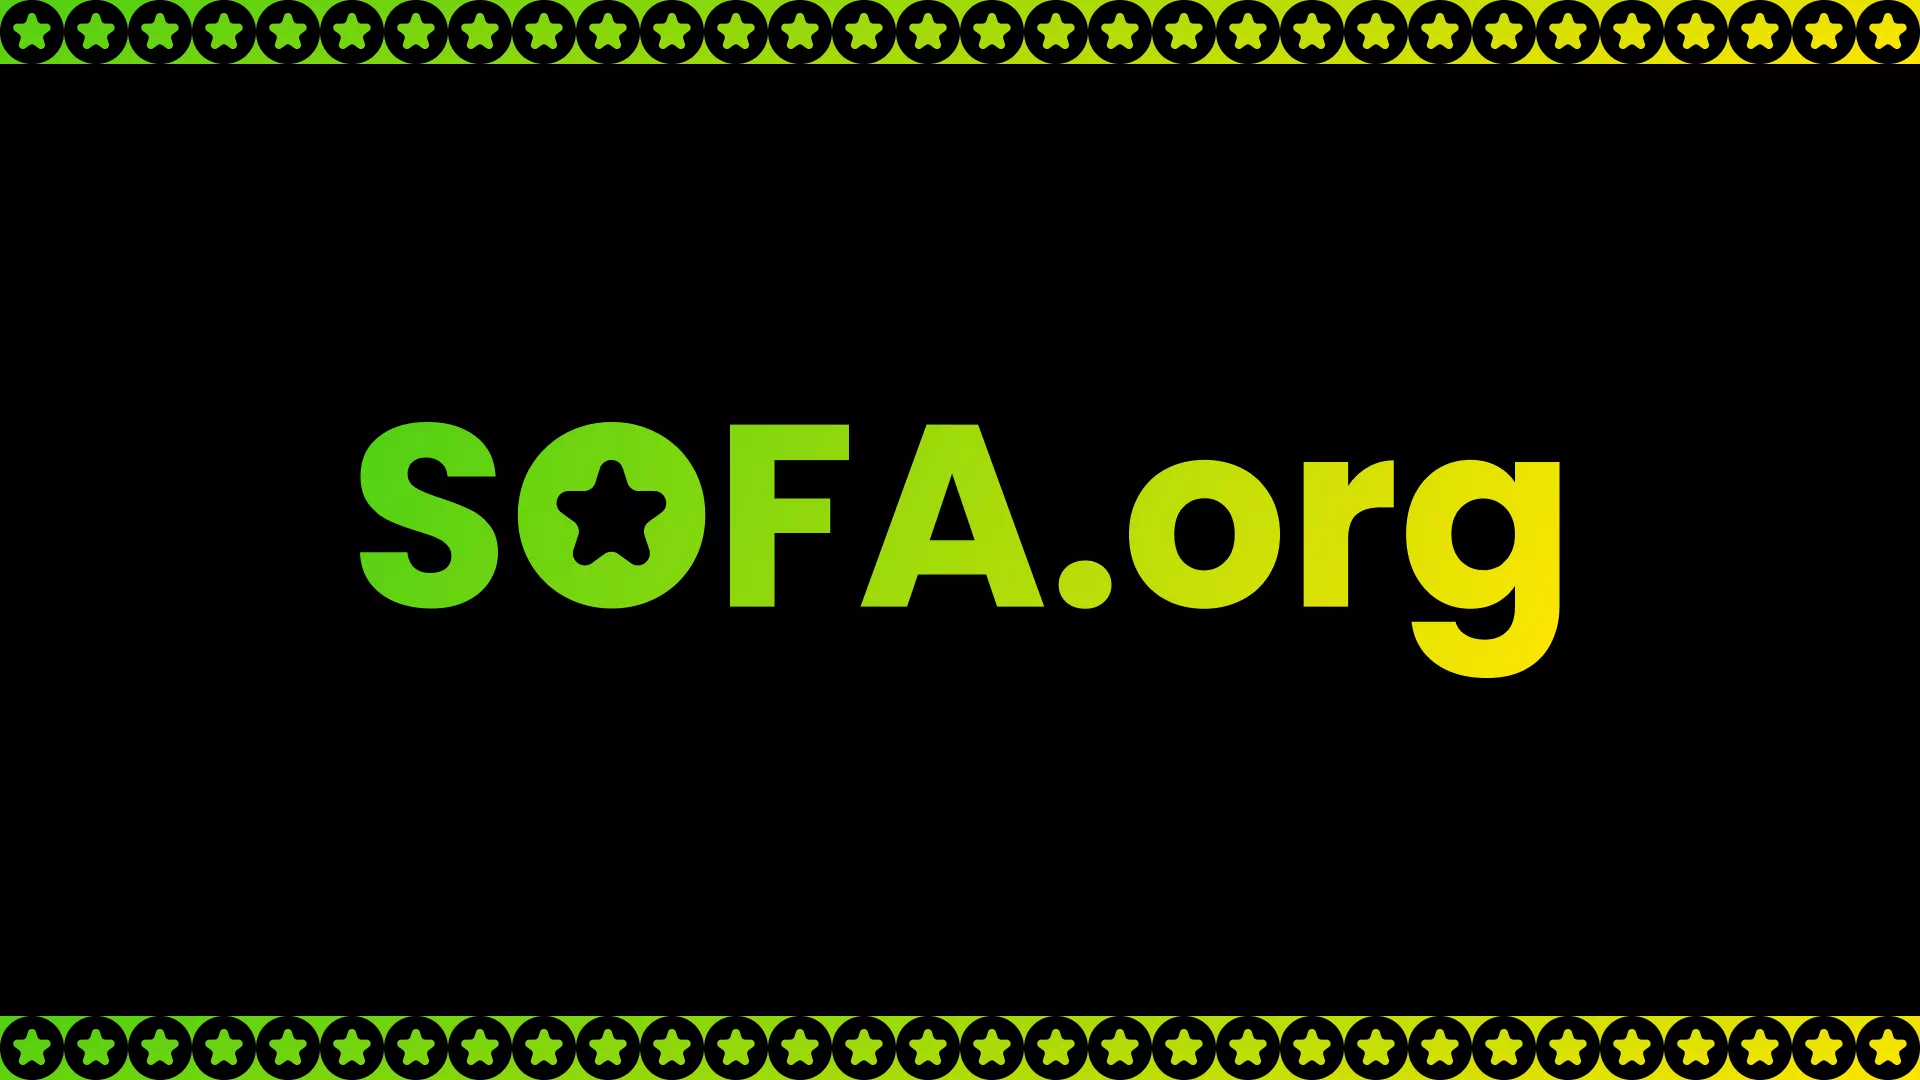 SOFA.org